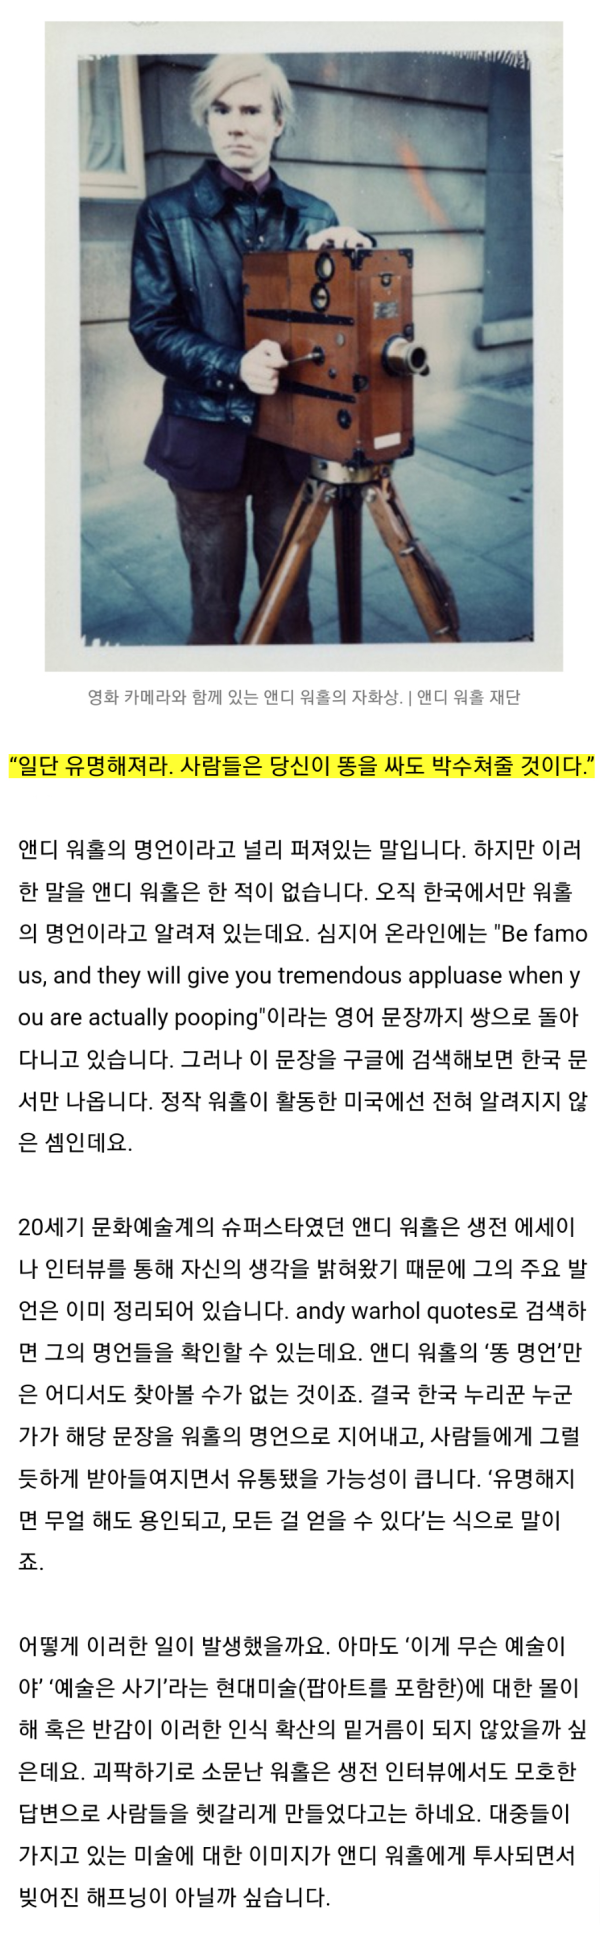 한국에서만 퍼진 잘못된 명언